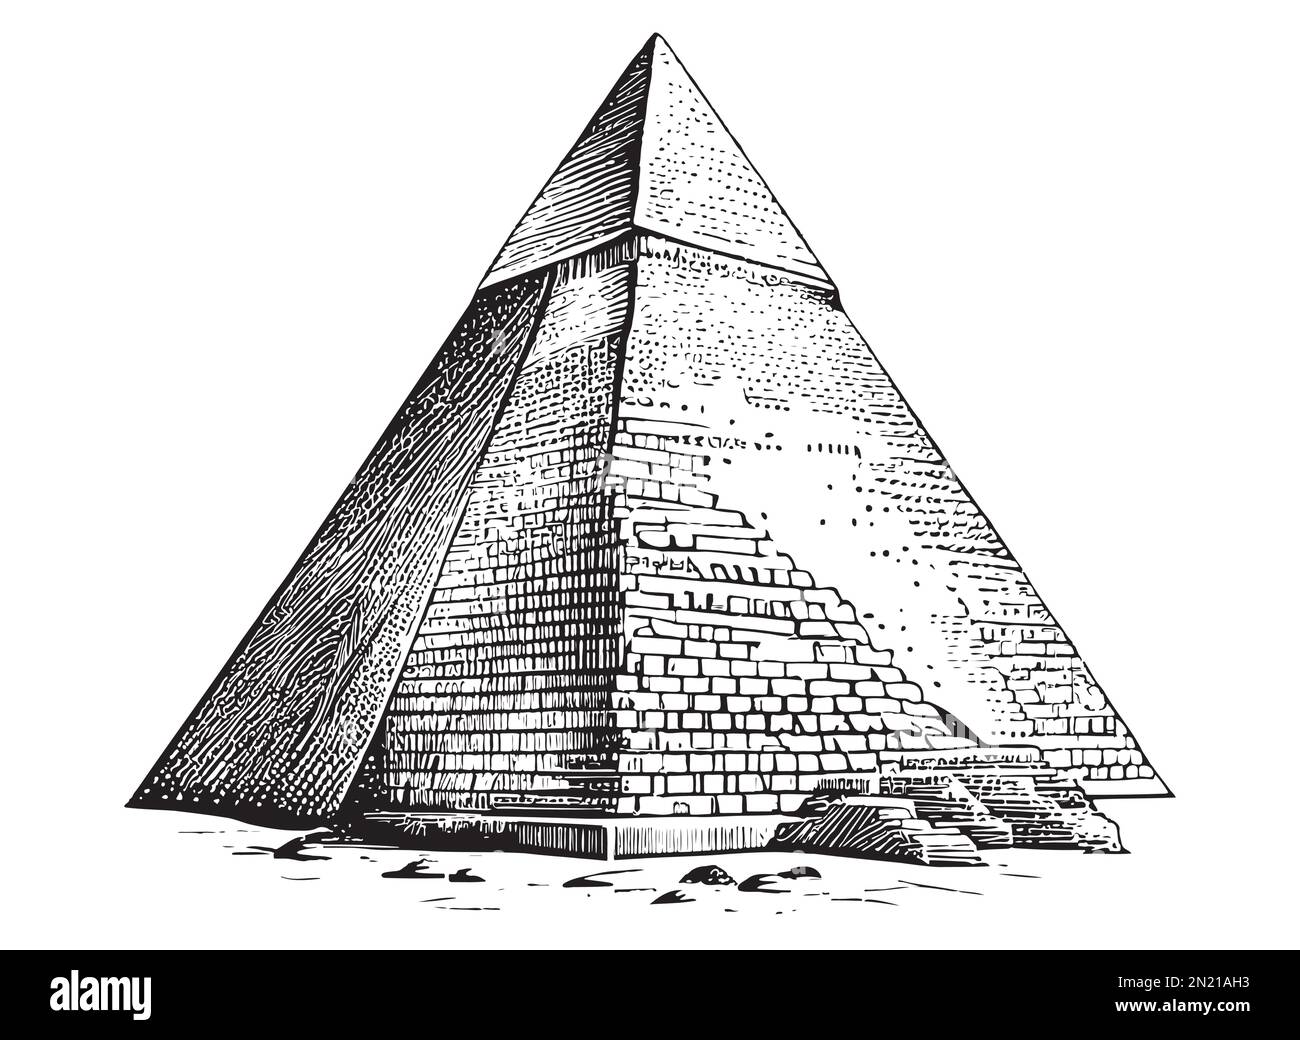 Darstellung des handgezeichneten Skizzenvektors der Pyramide Stock Vektor